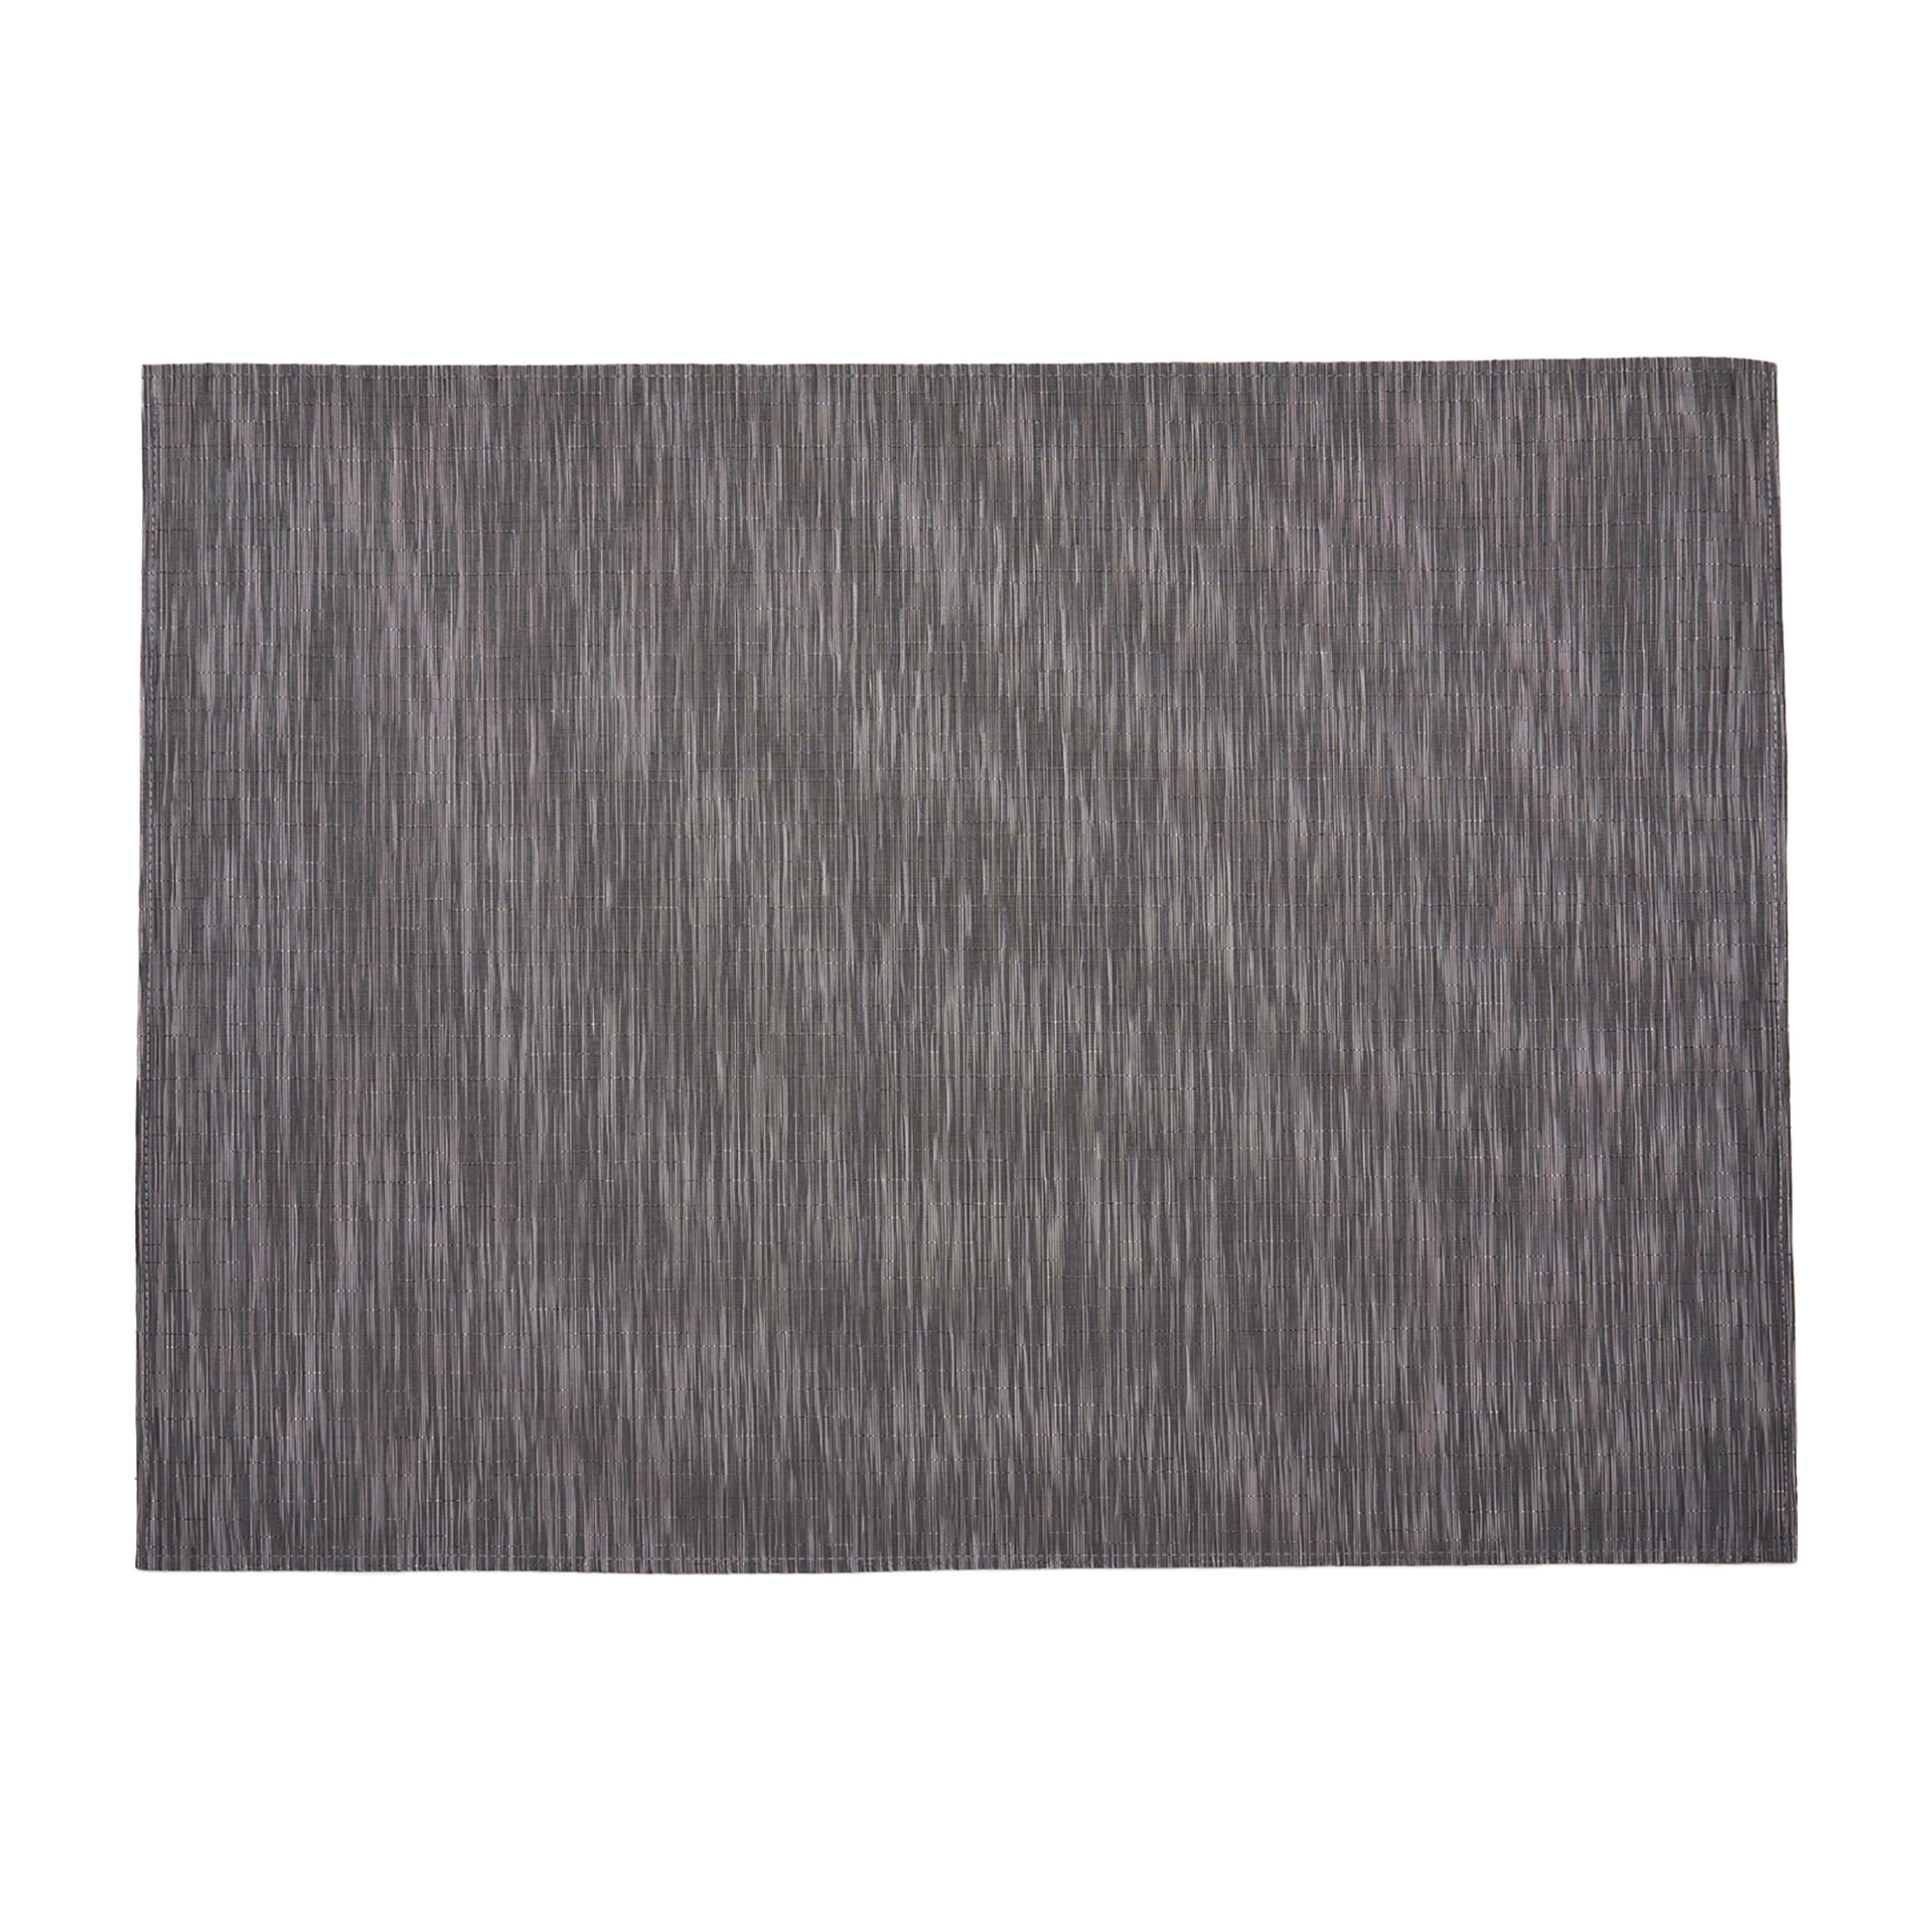 Bamboo Floor Mat Grey Flannel Home Decor Rugs Maisonette